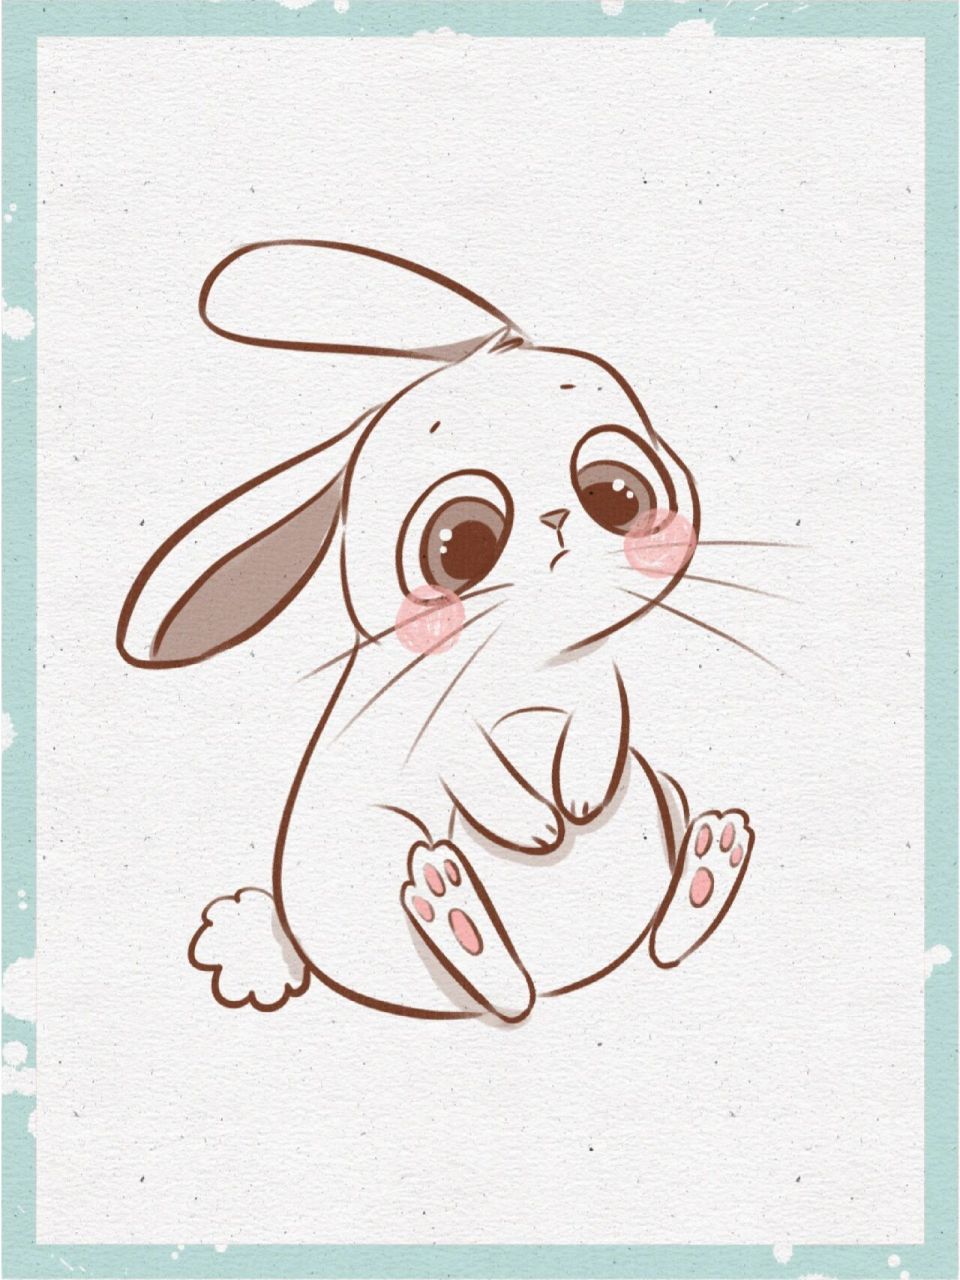 可爱兔子简笔画 公主图片